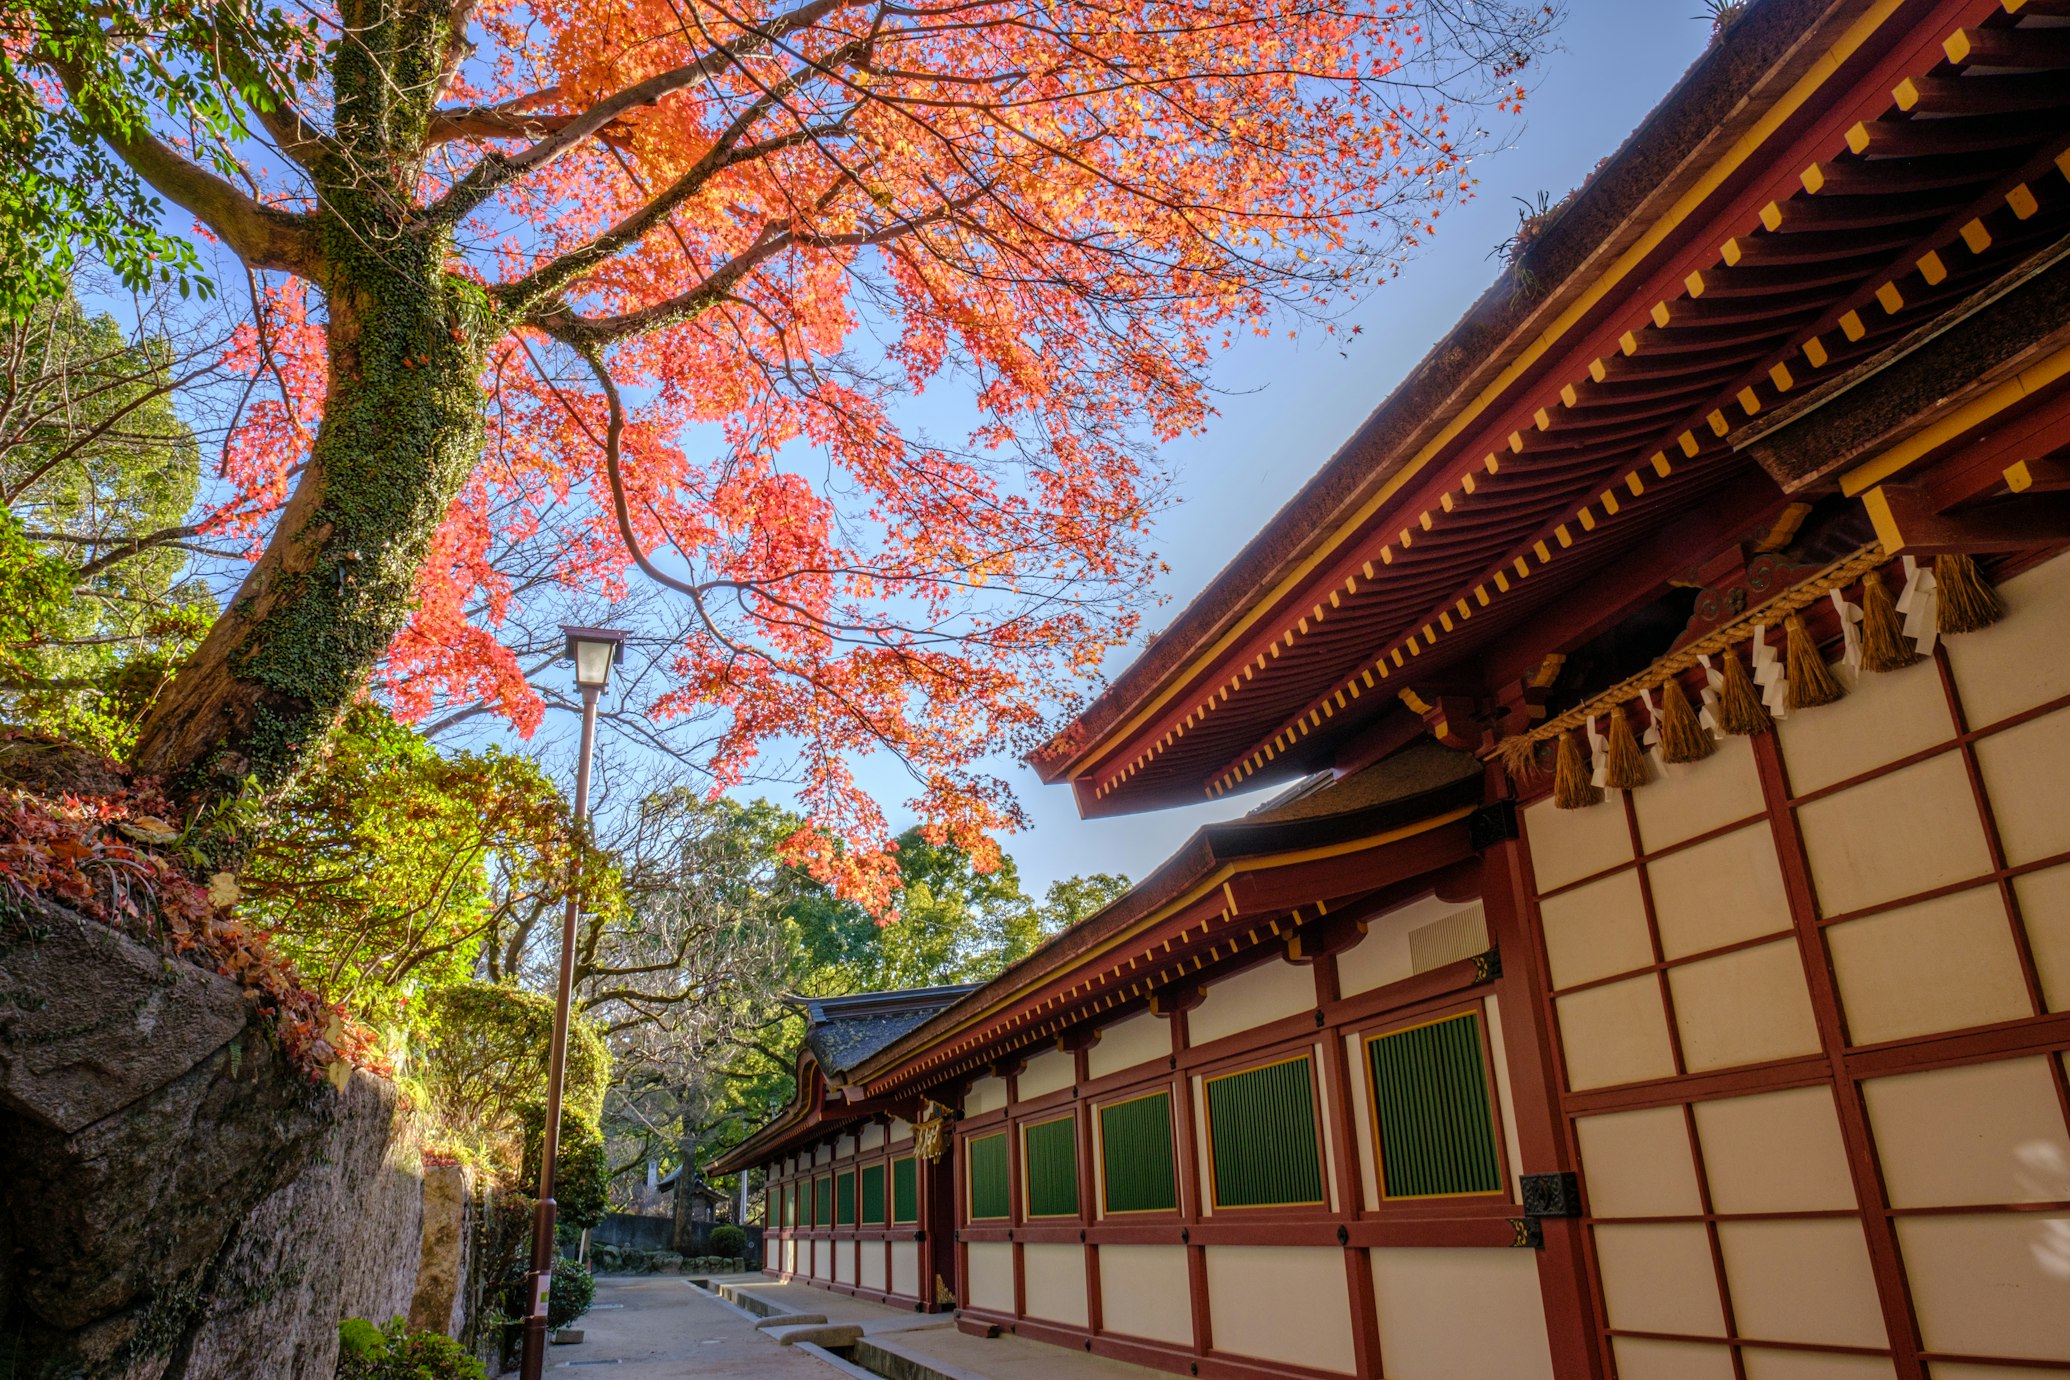 Un edificio tipico giapponese affiancato da alberi con foliage autunnale